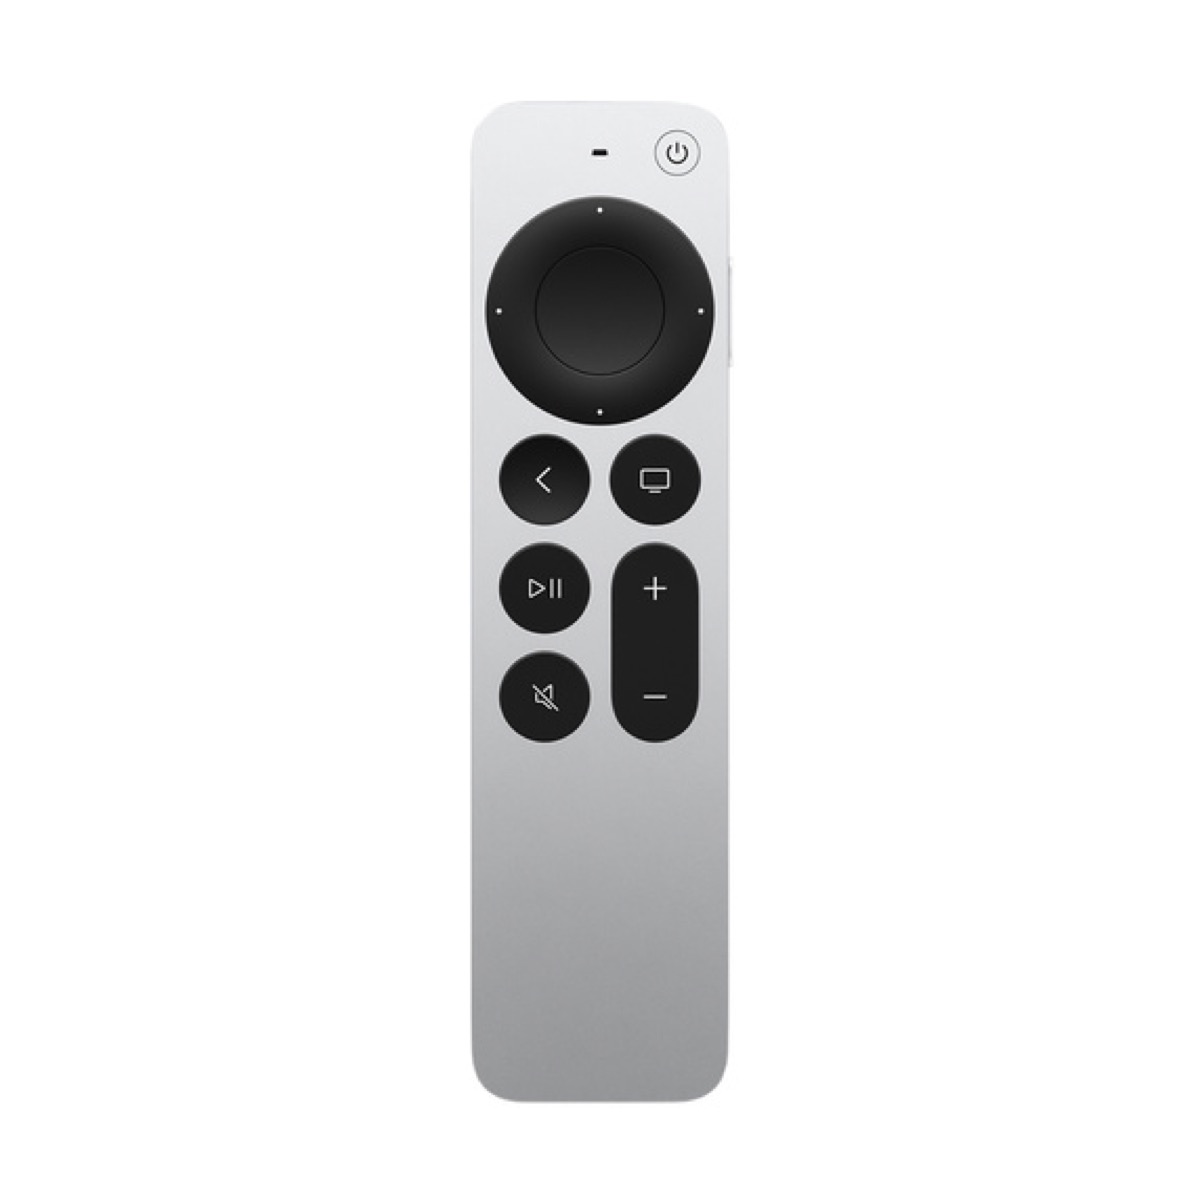 L’Apple TV Remote di seconda generazione si acquista a 65 euro